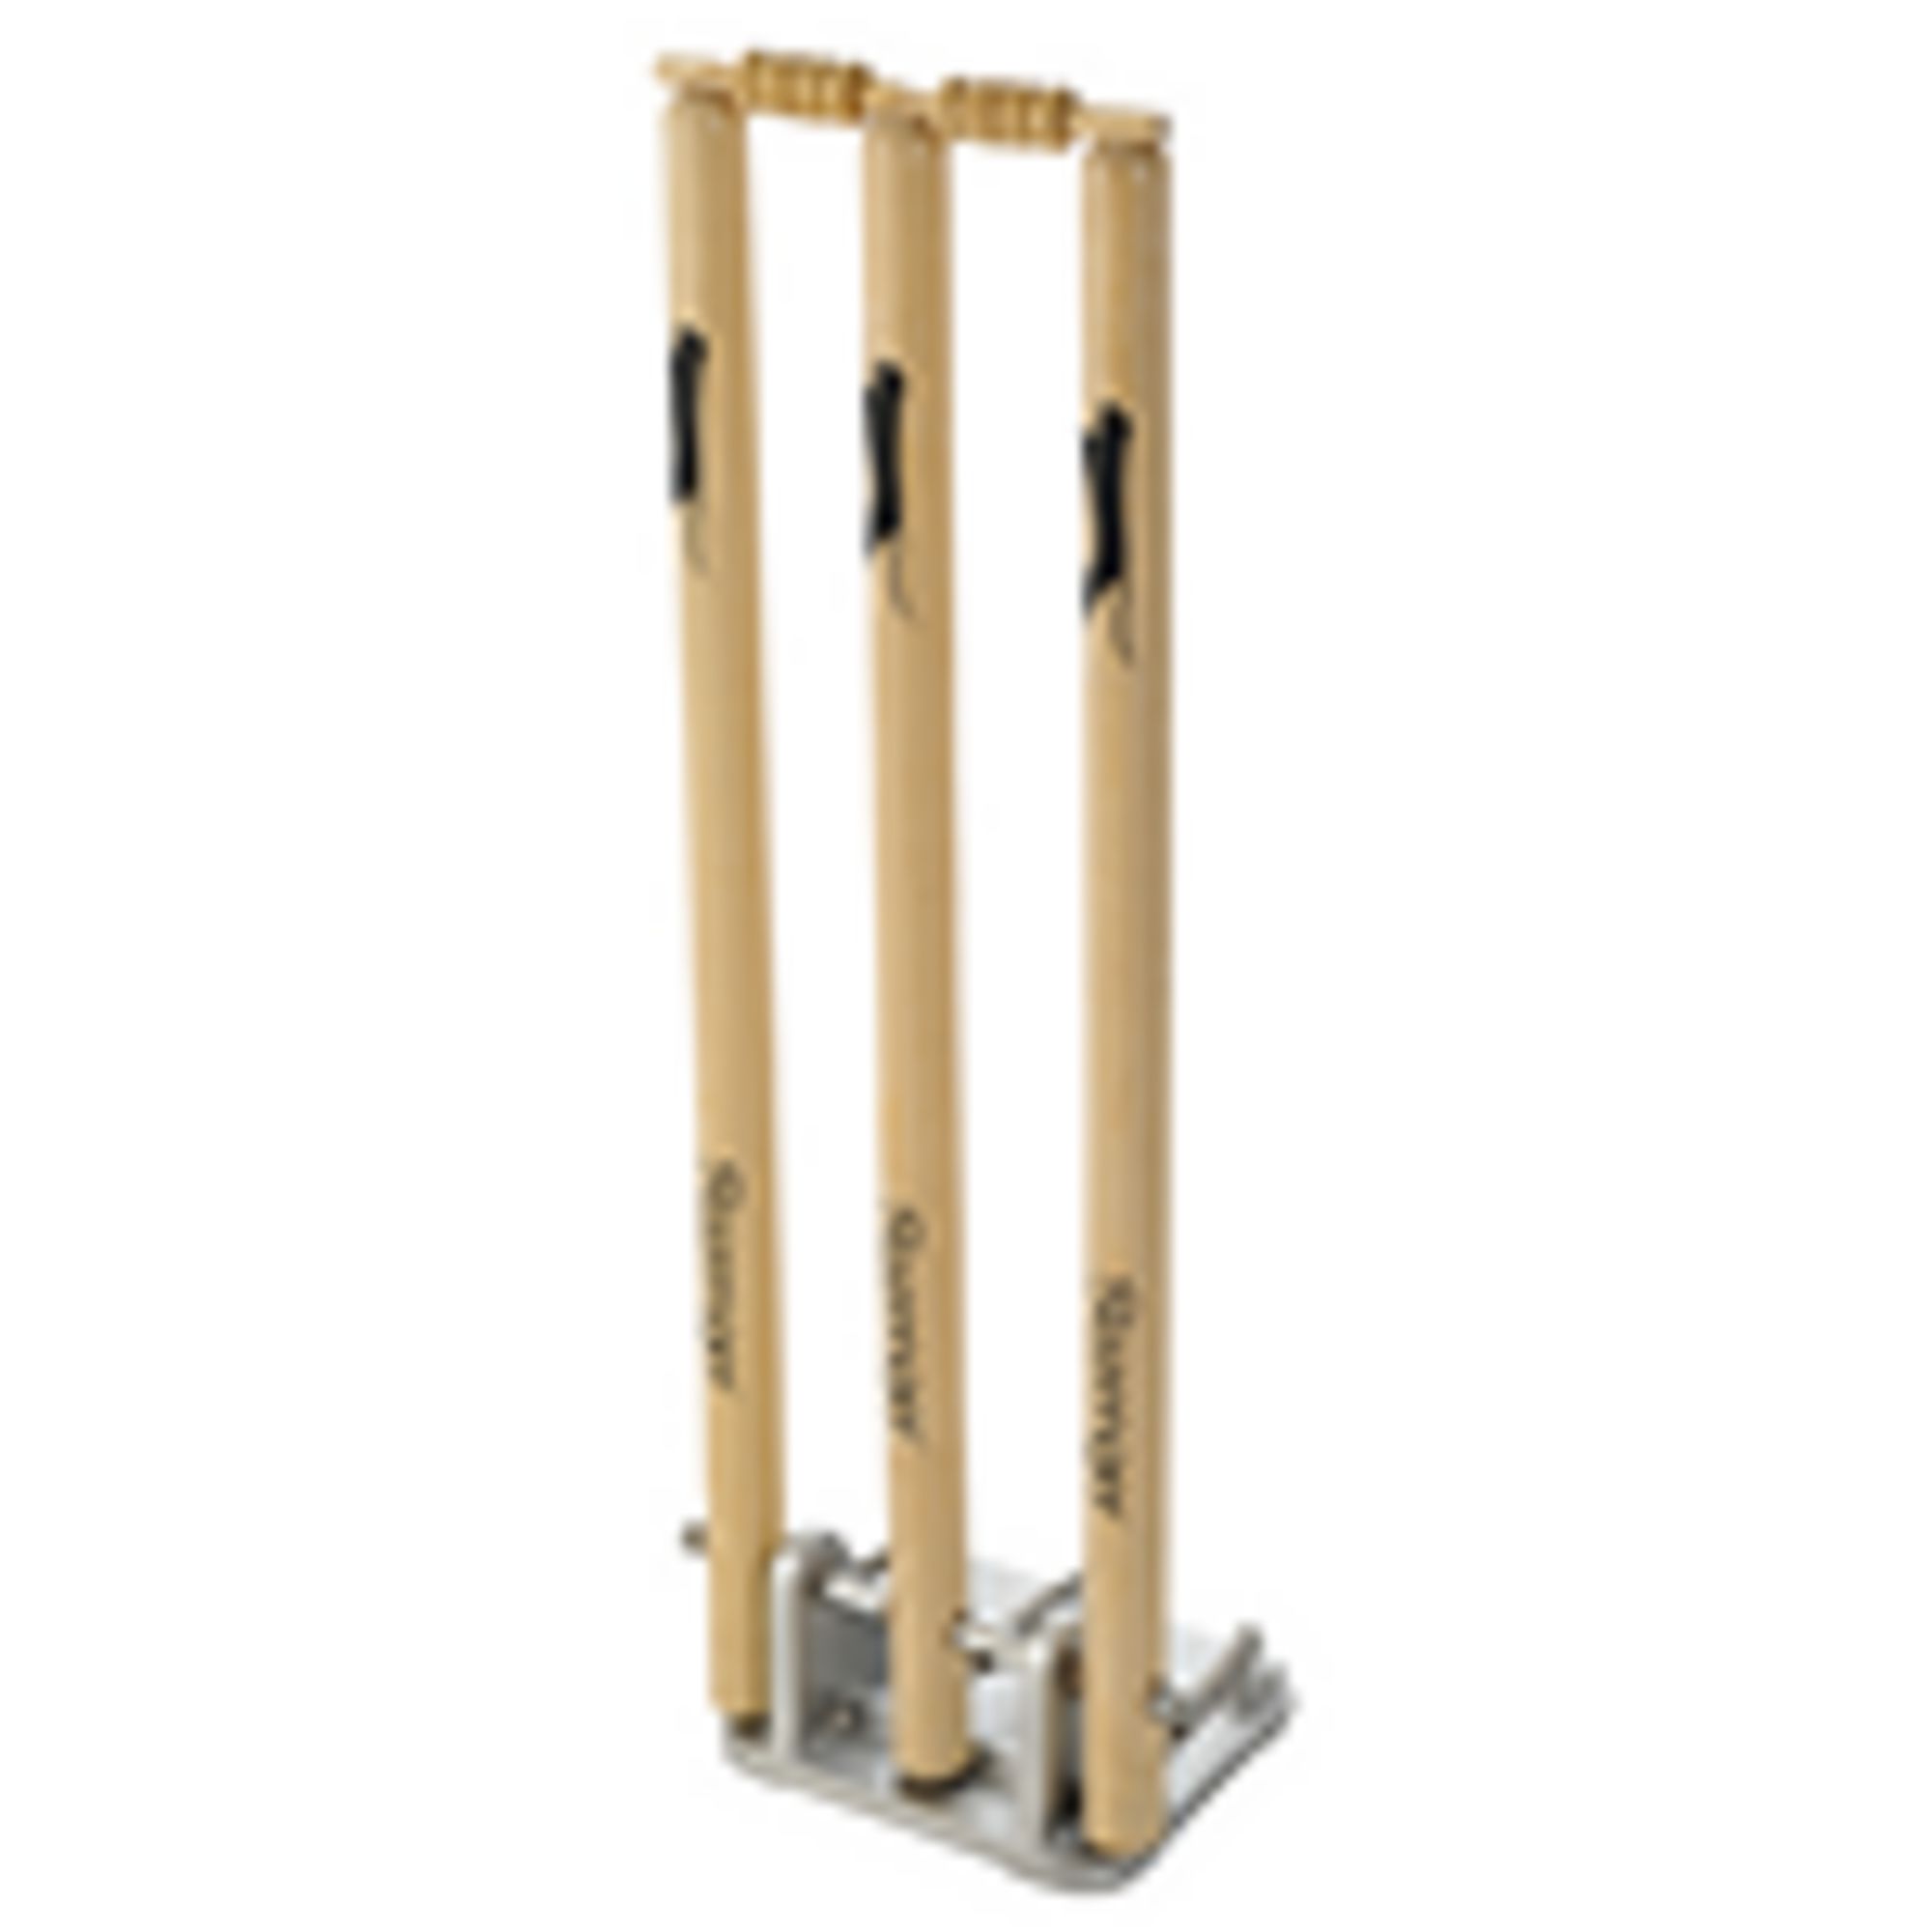 NEW Slazenger Wooden Cricket Stumps 